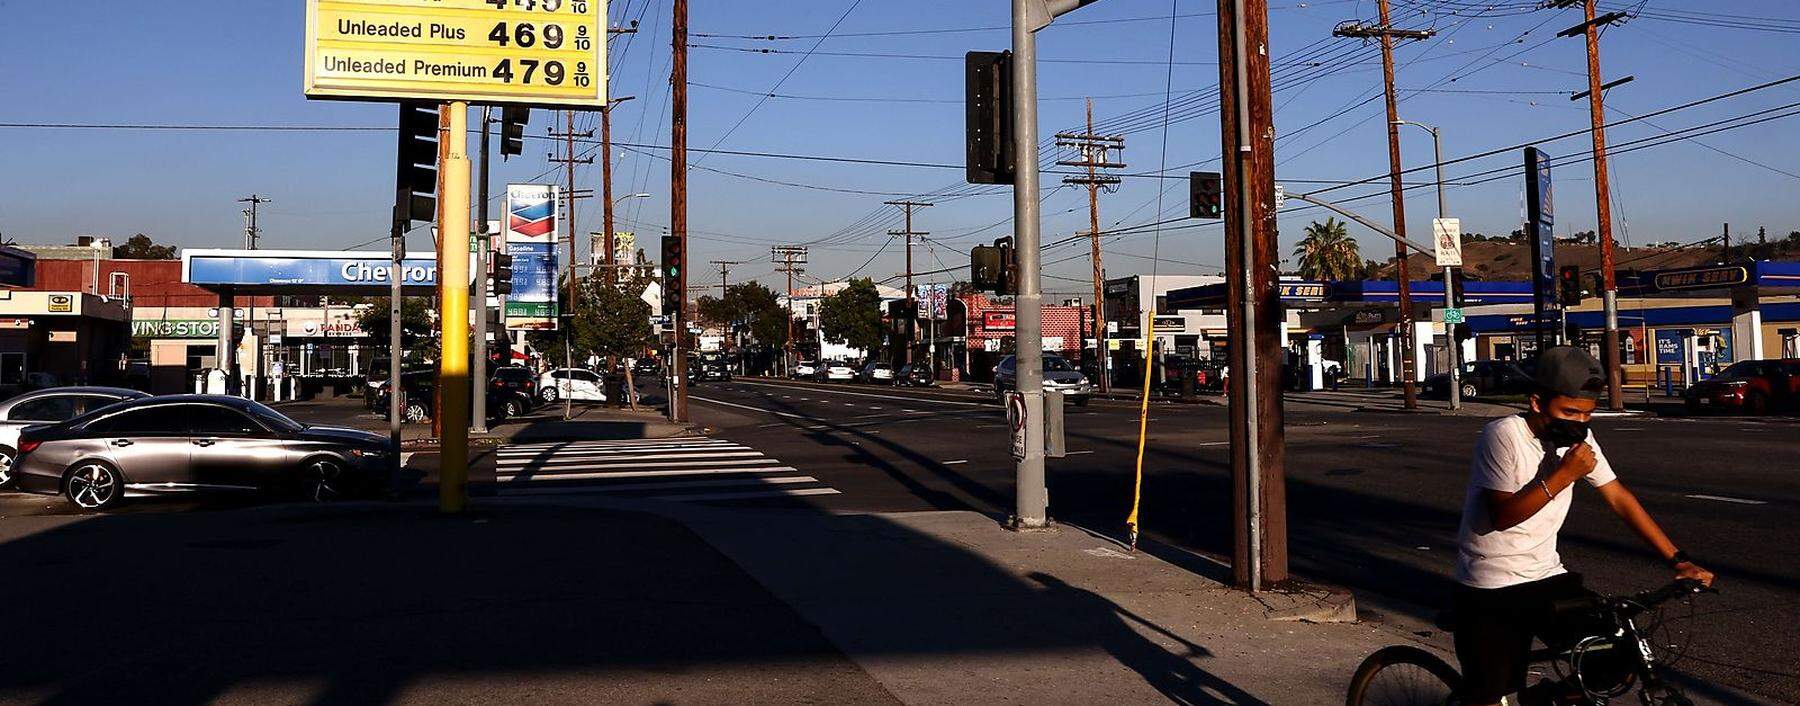 In den vergangenen zwölf Monaten ist der Ölpreis fast um 80 Prozent gestiegen. Im Bild eine Tankstelle in Los Angeles.